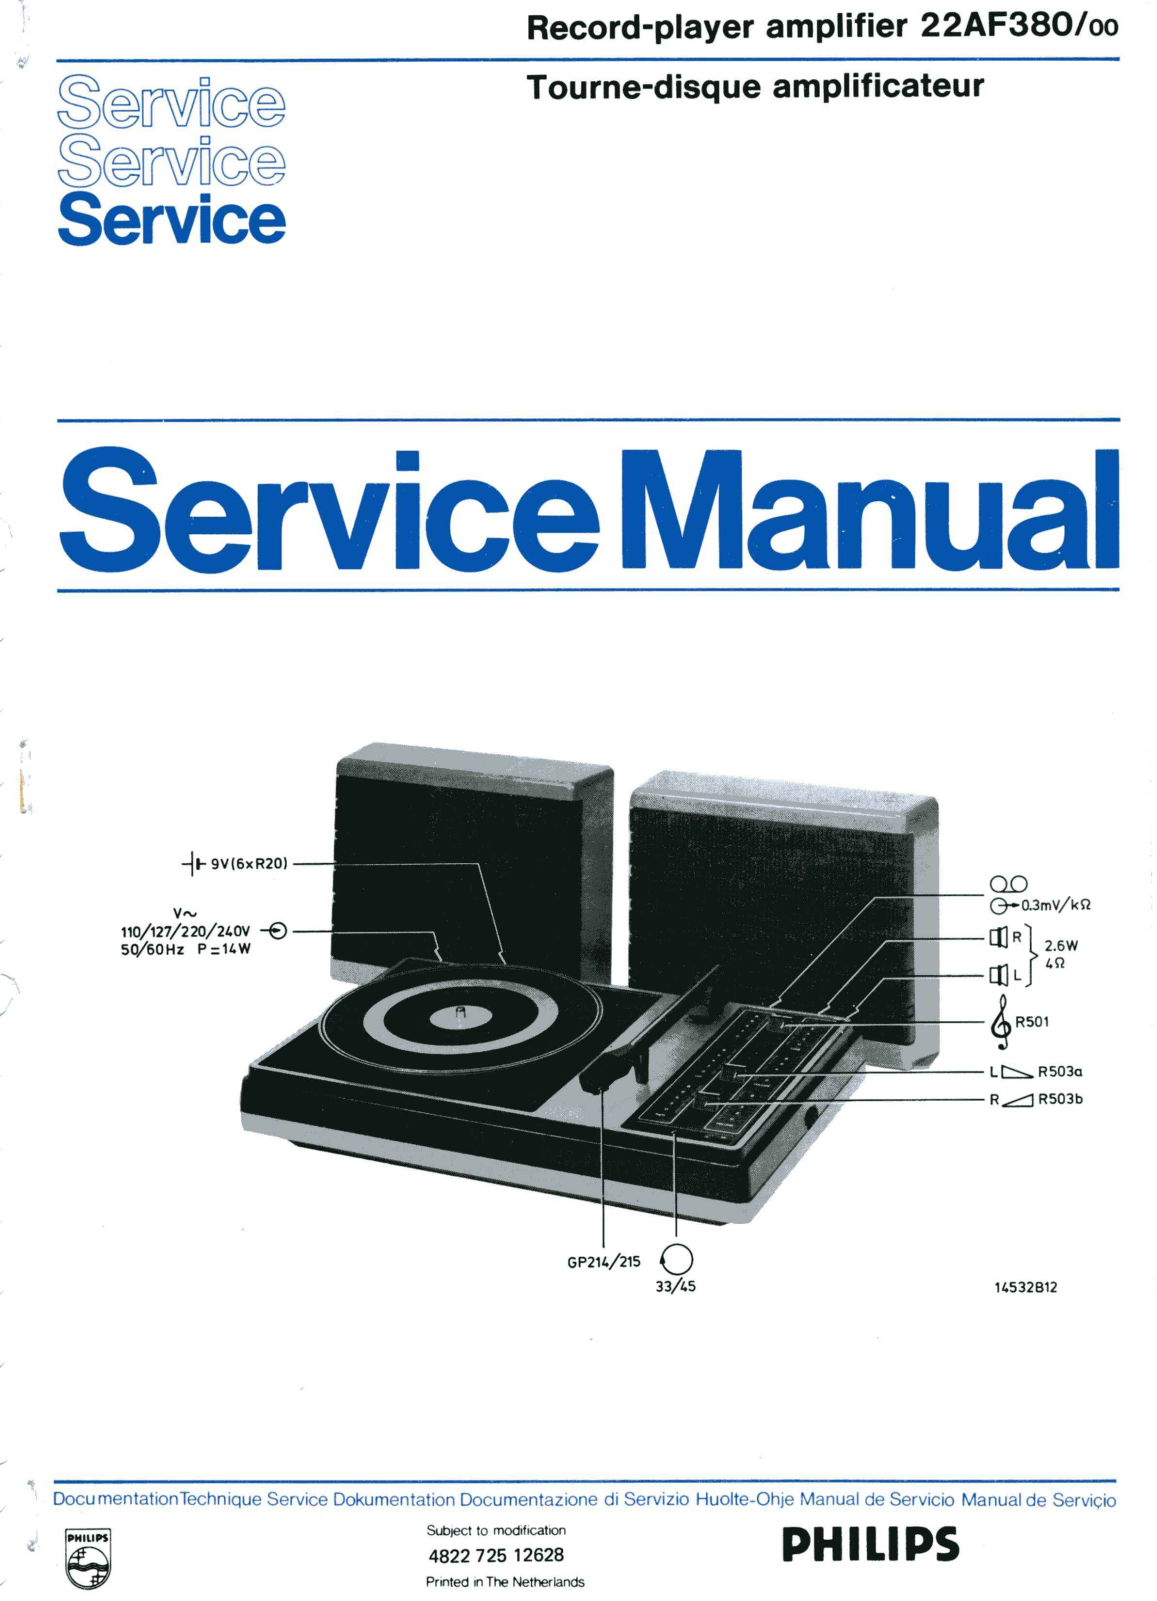 Philips AF-380 Service Manual